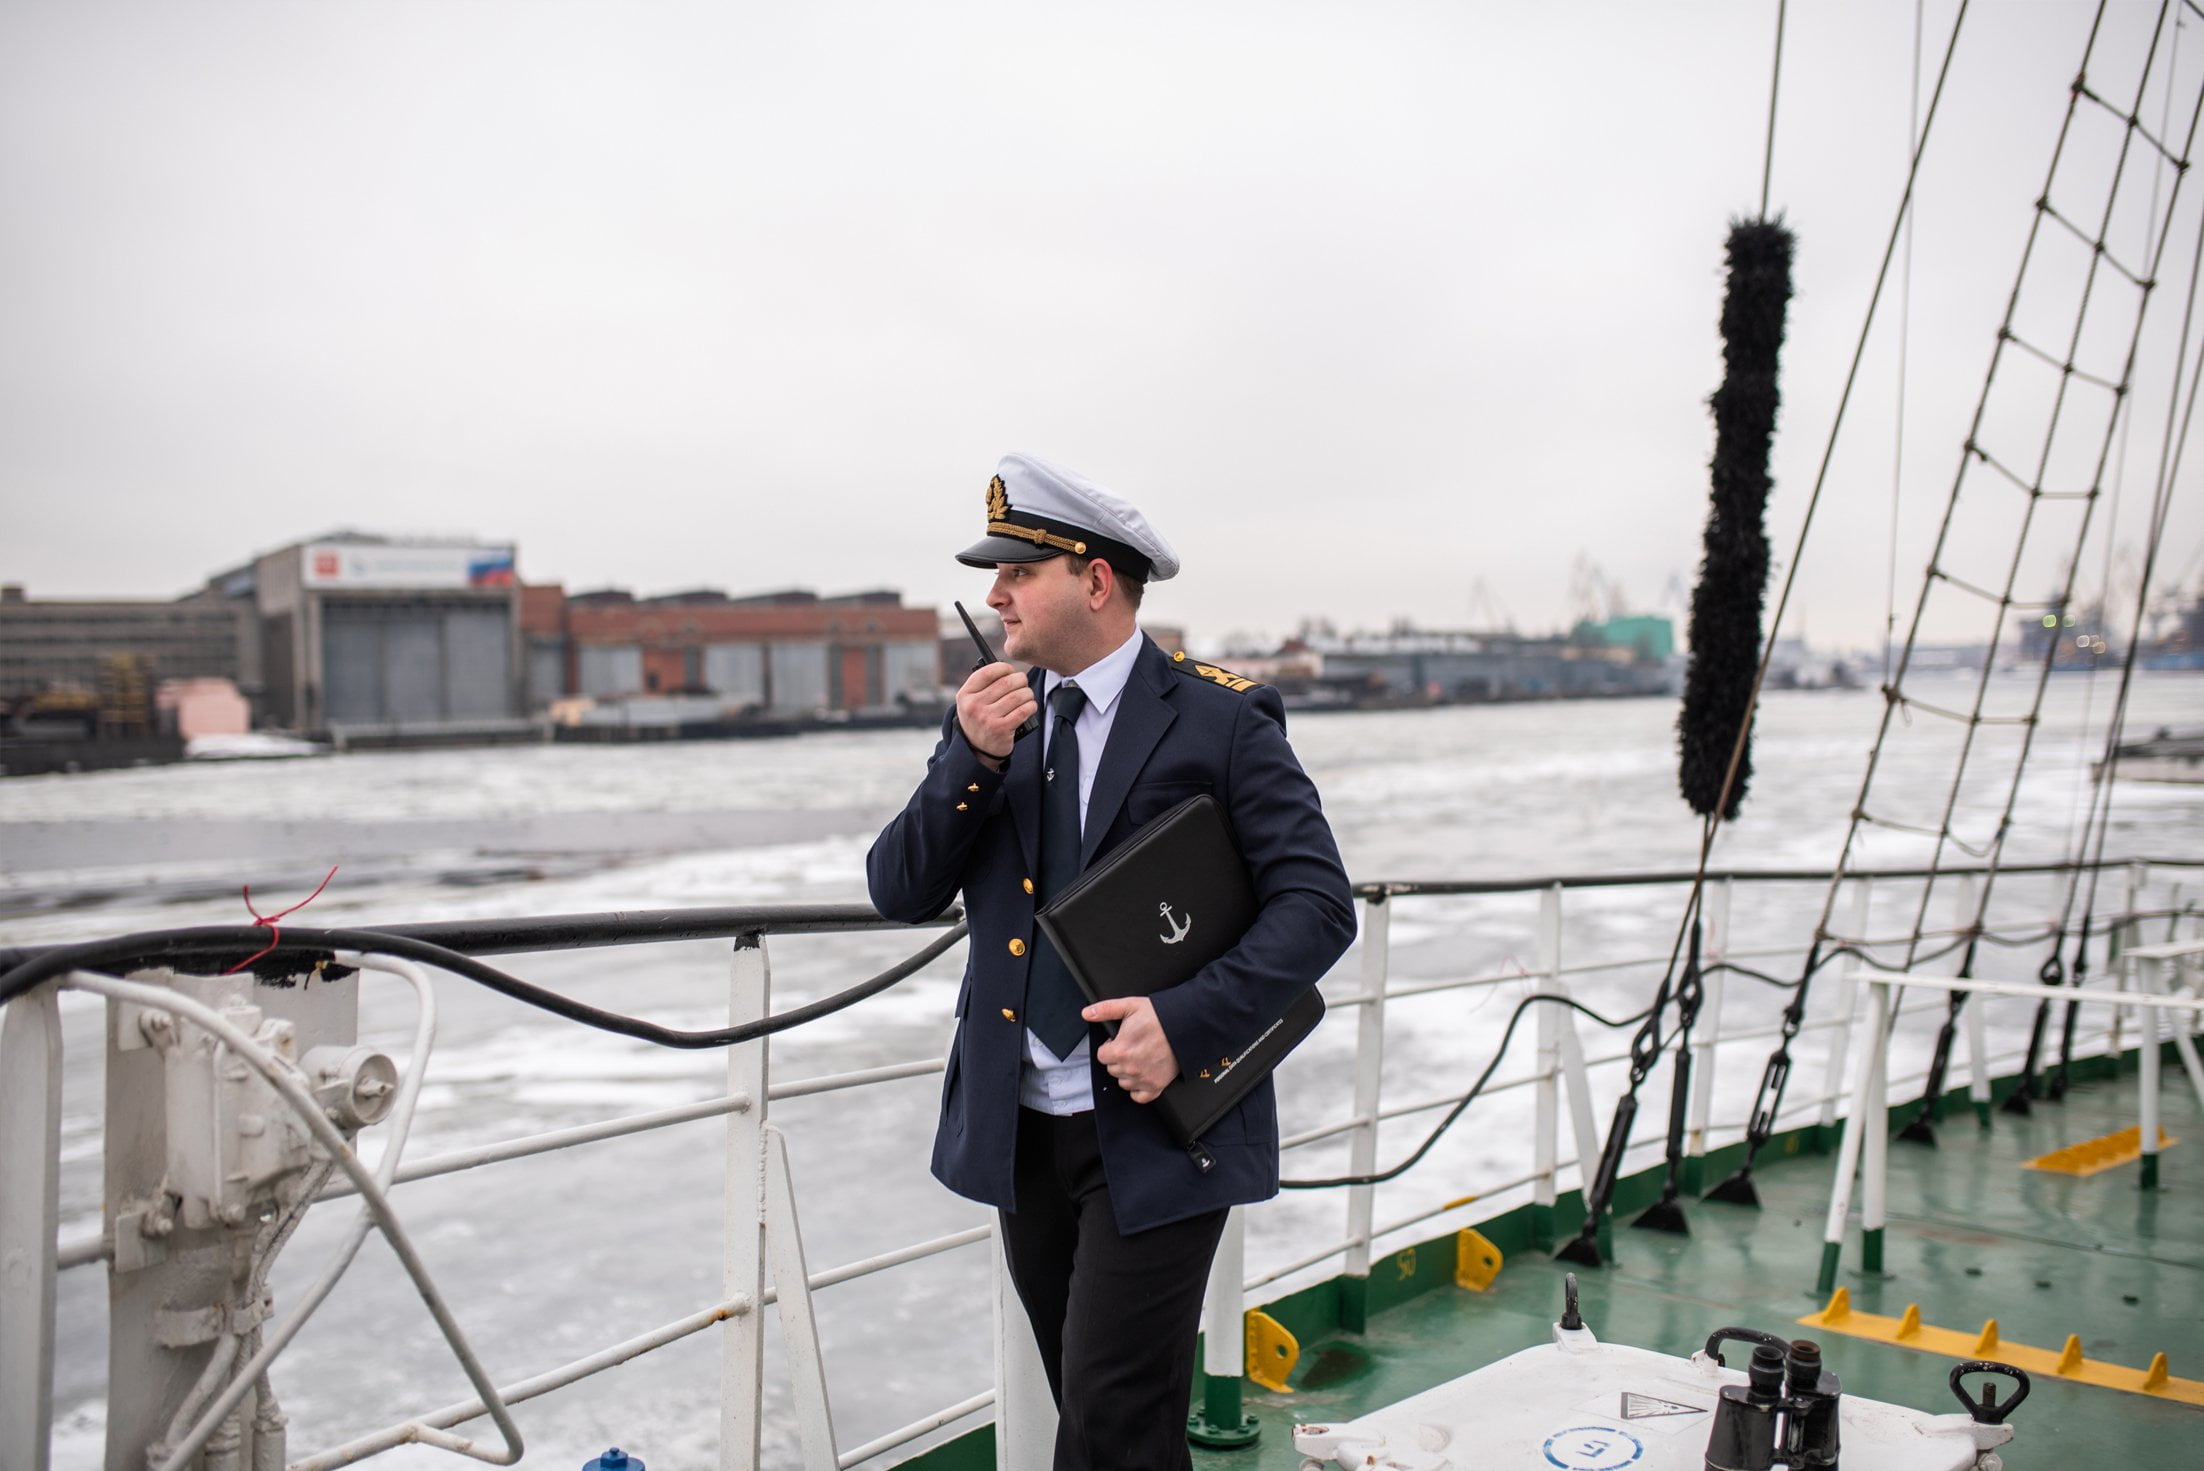 Открытка моряку с 23 февраля - скачать бесплатно на сайте баштрен.рф